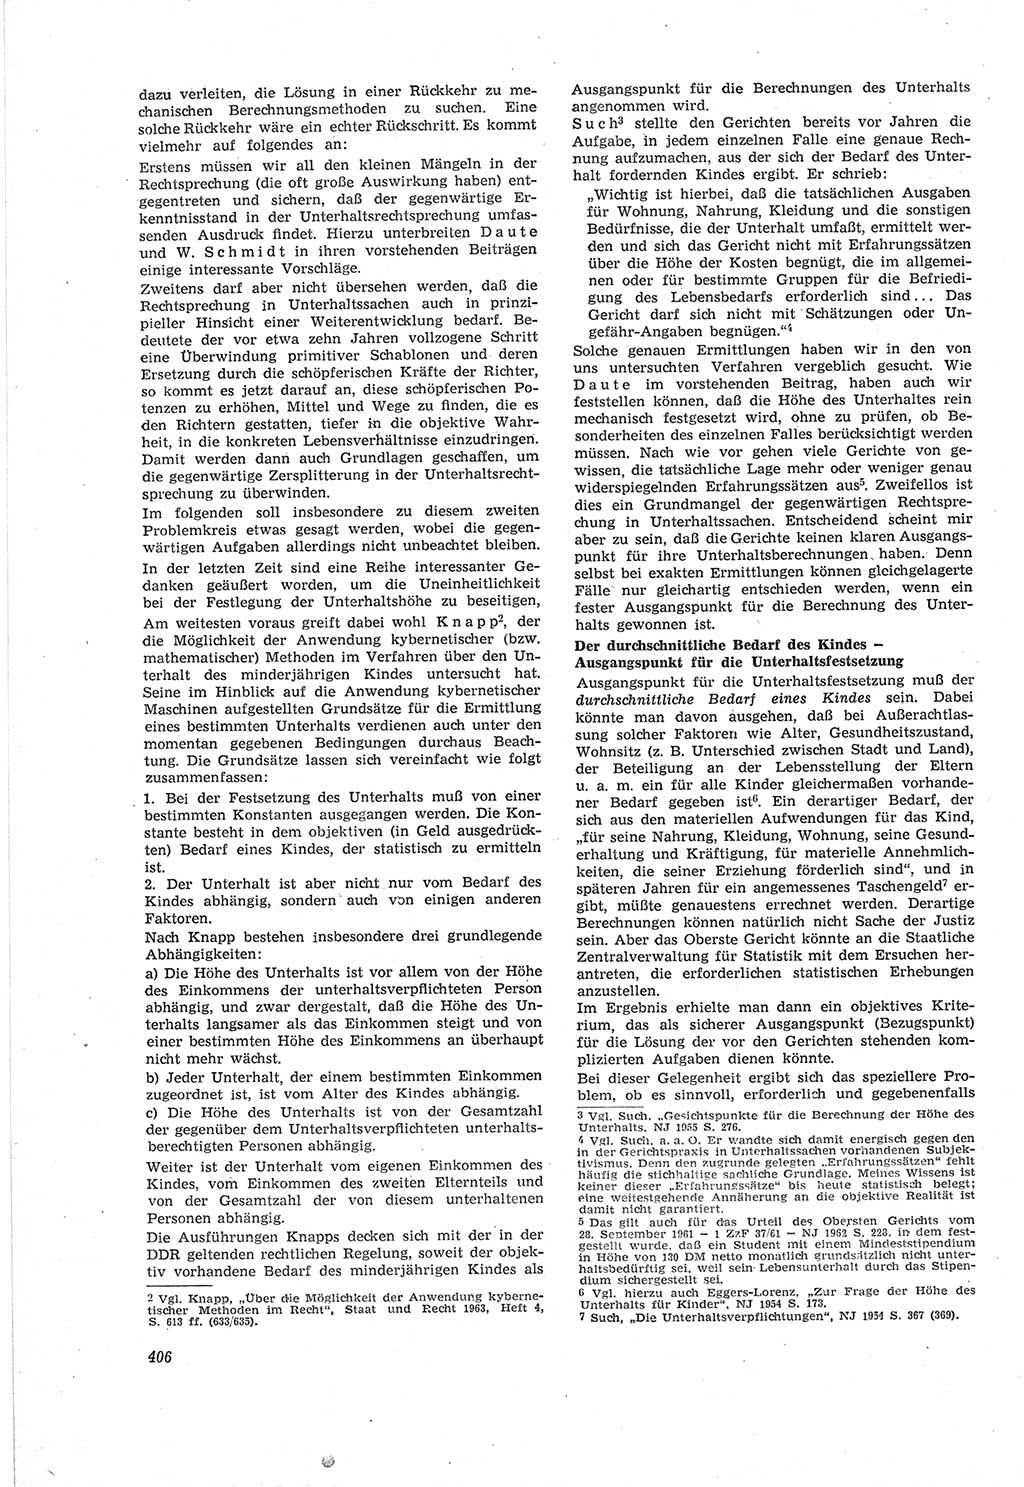 Neue Justiz (NJ), Zeitschrift für Recht und Rechtswissenschaft [Deutsche Demokratische Republik (DDR)], 18. Jahrgang 1964, Seite 406 (NJ DDR 1964, S. 406)